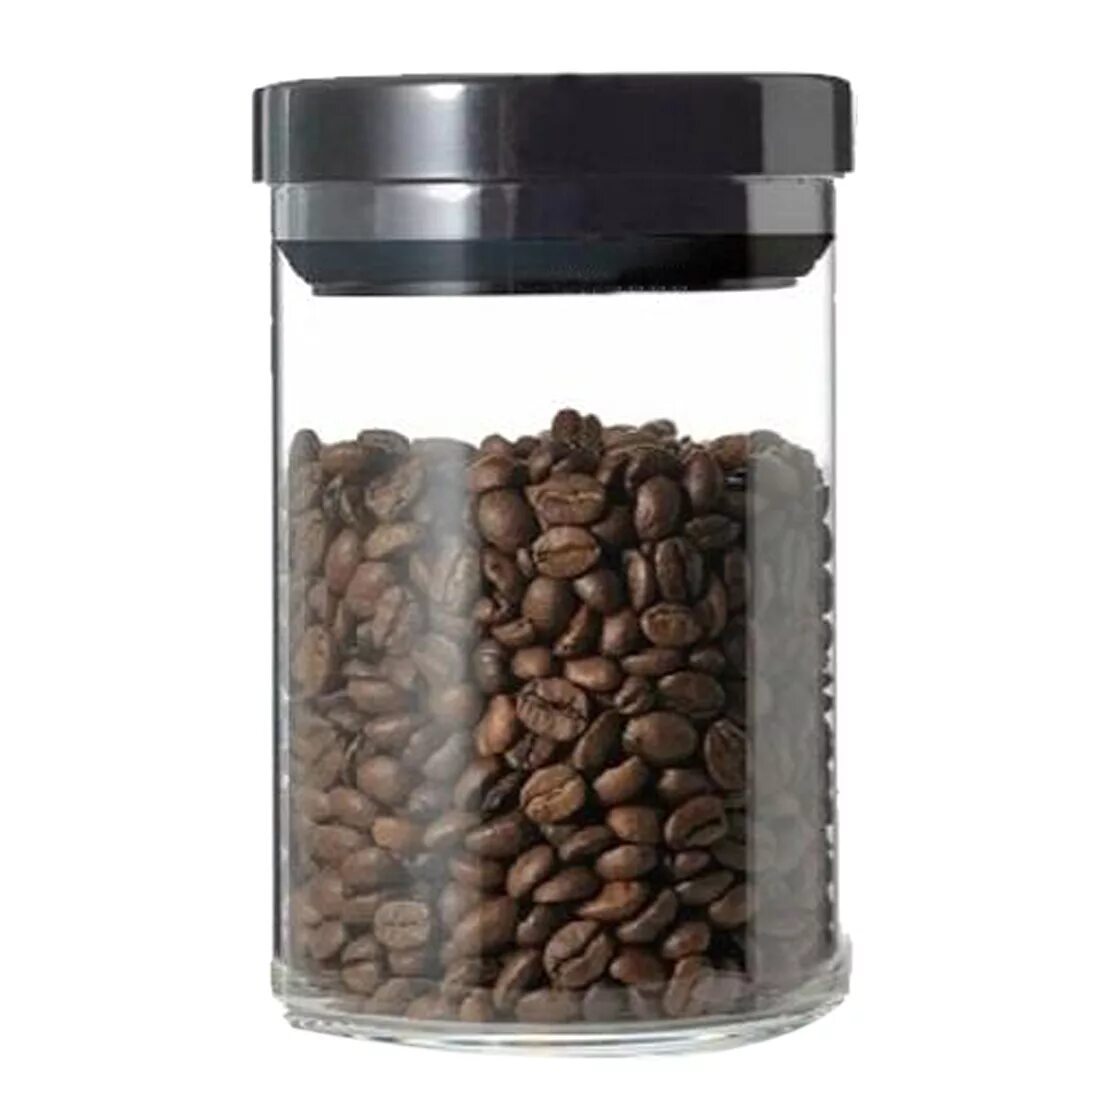 Банка для кофе. Банки для зернового кофе. Кофейные зерна в стеклянной банке. Банка для зернового кофе.